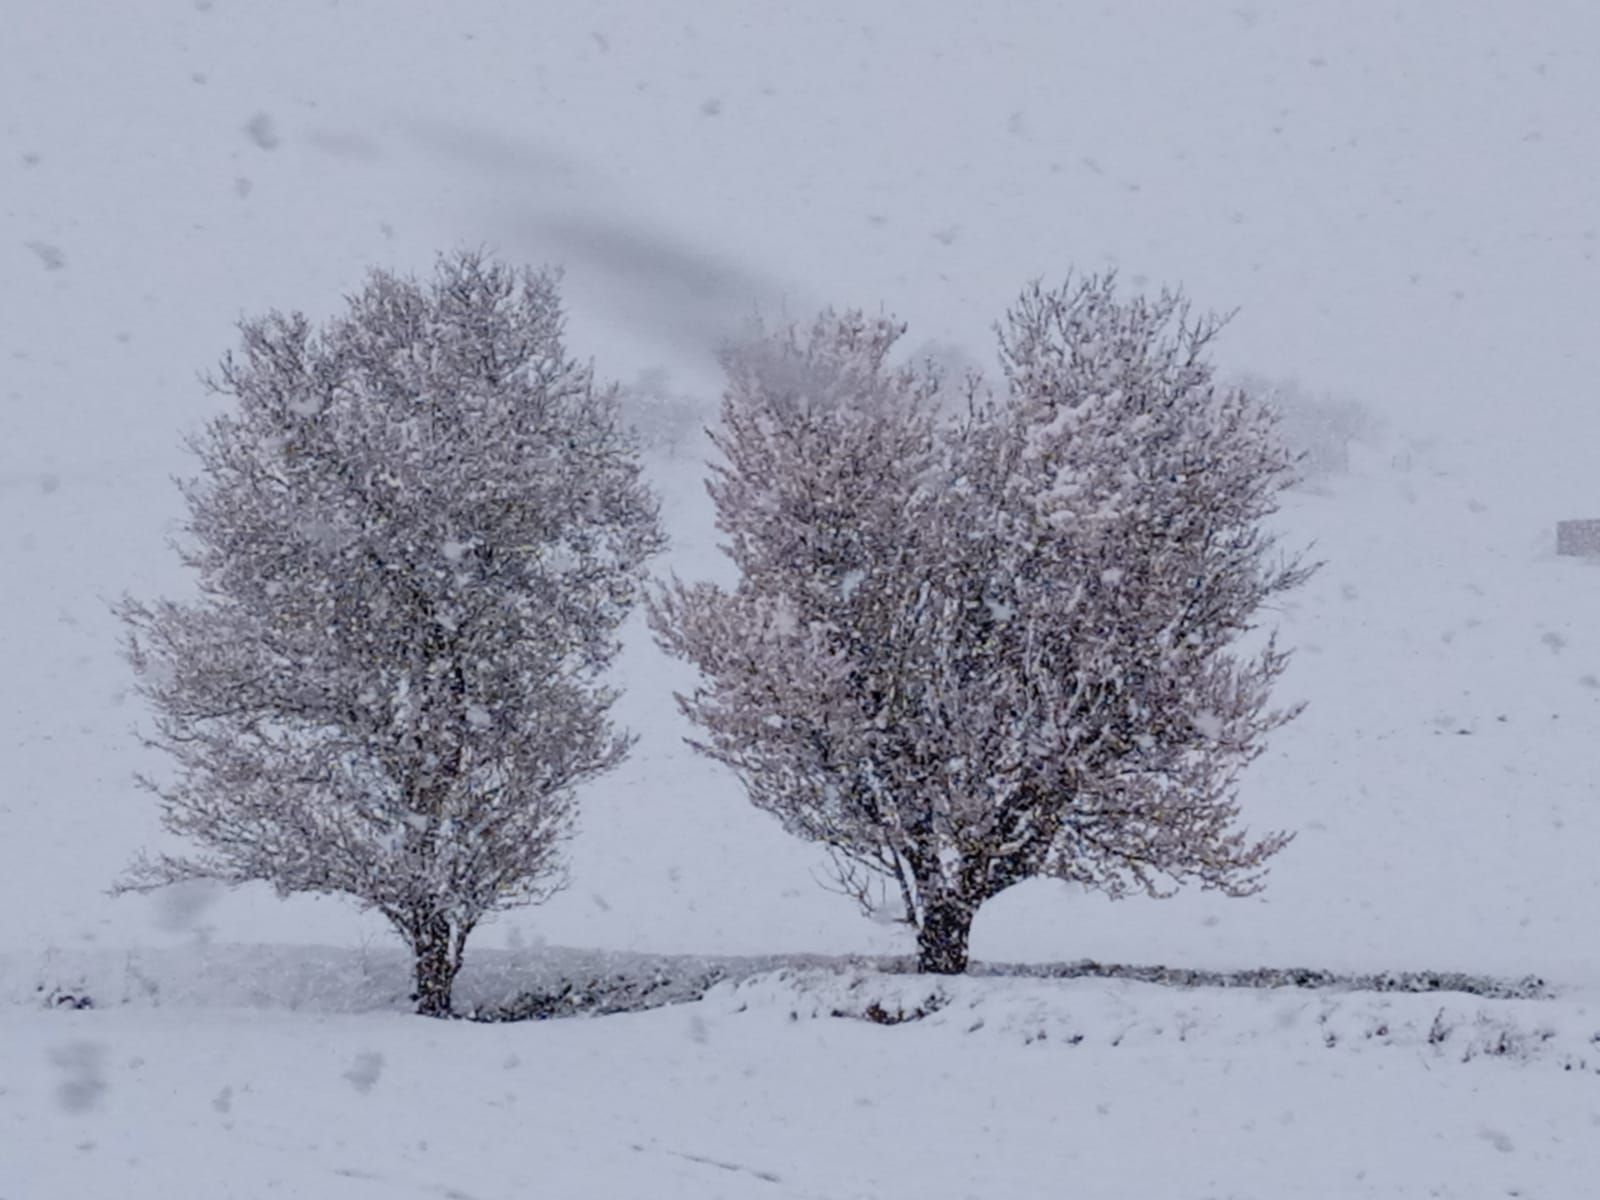 GALERÍA | Nieve sobre la flor del almendro en Zamora